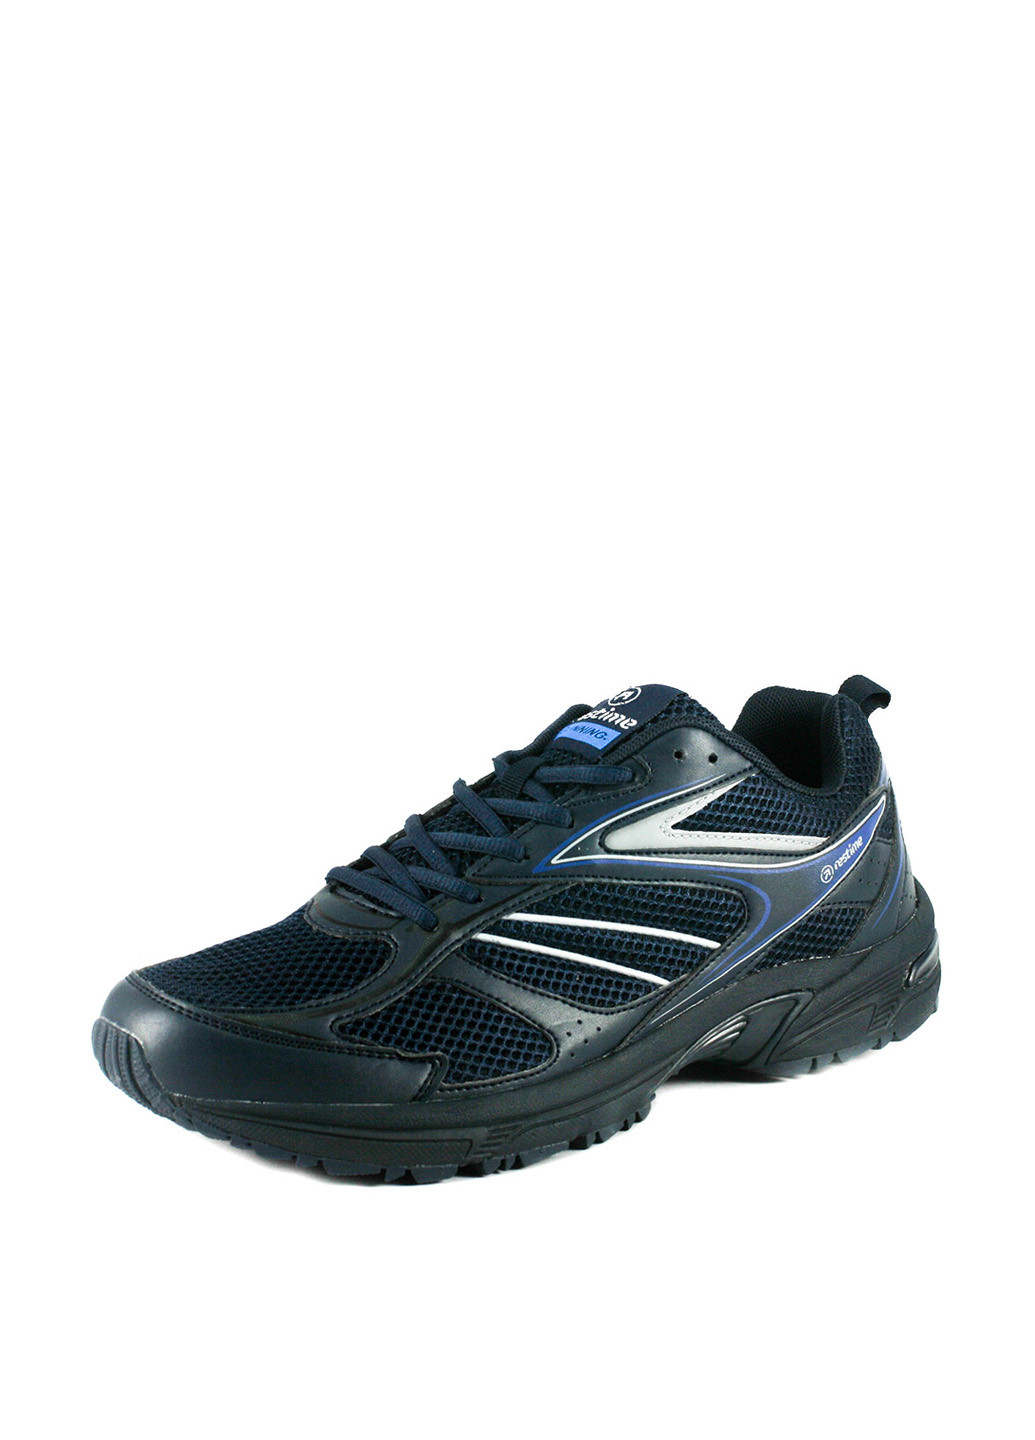 Темно-синие демисезонные кроссовки Restime